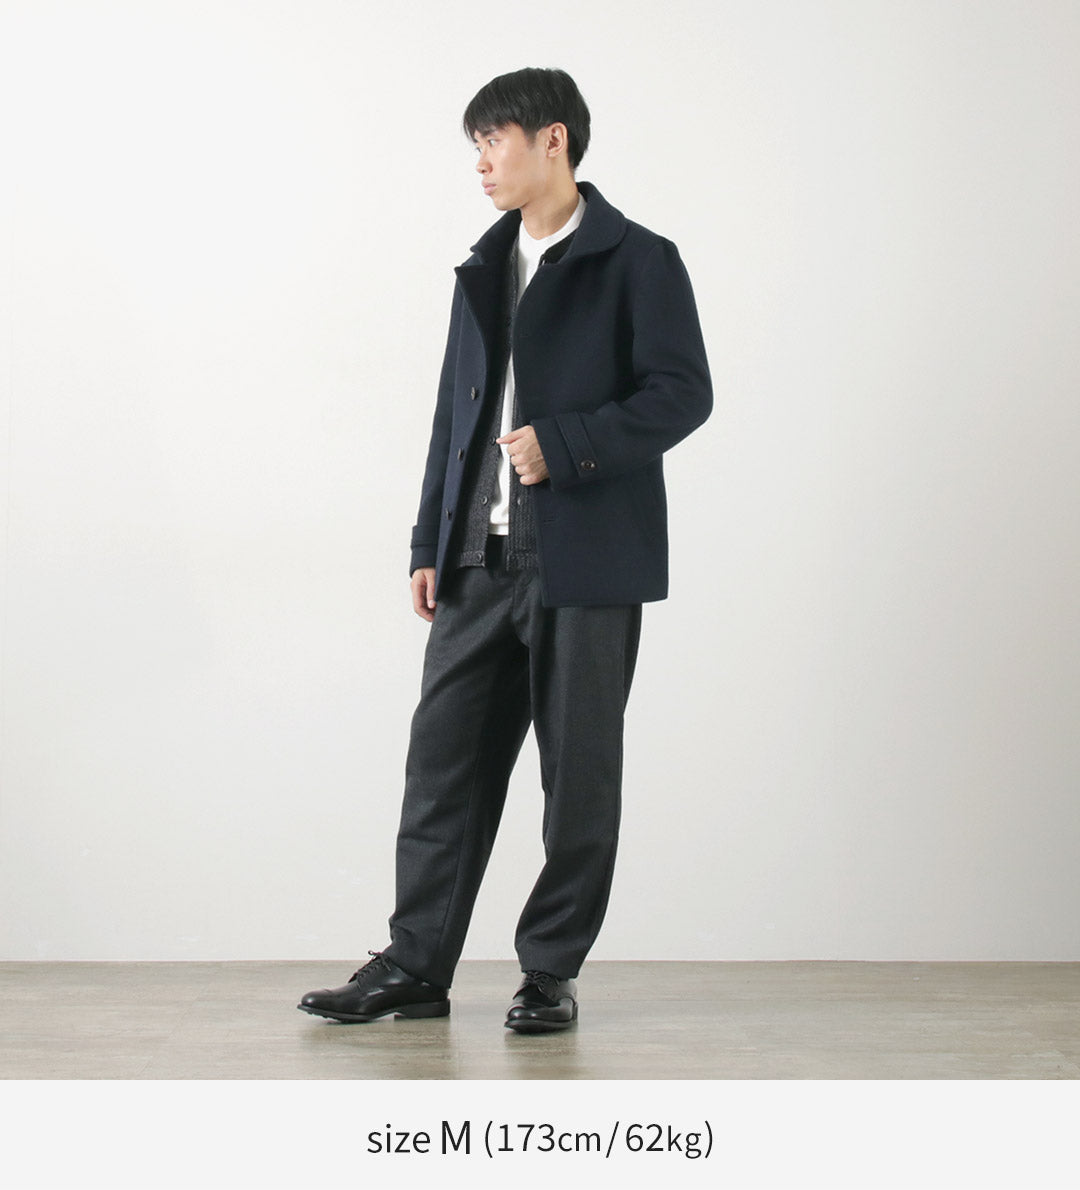 RE MADE IN TOKYO JAPAN（アールイー） ウールメルトン スタンドカラー Pコート / メンズ ビジネス アウター 羽織 日本製 Wool Melton Stand Collar P-Coat